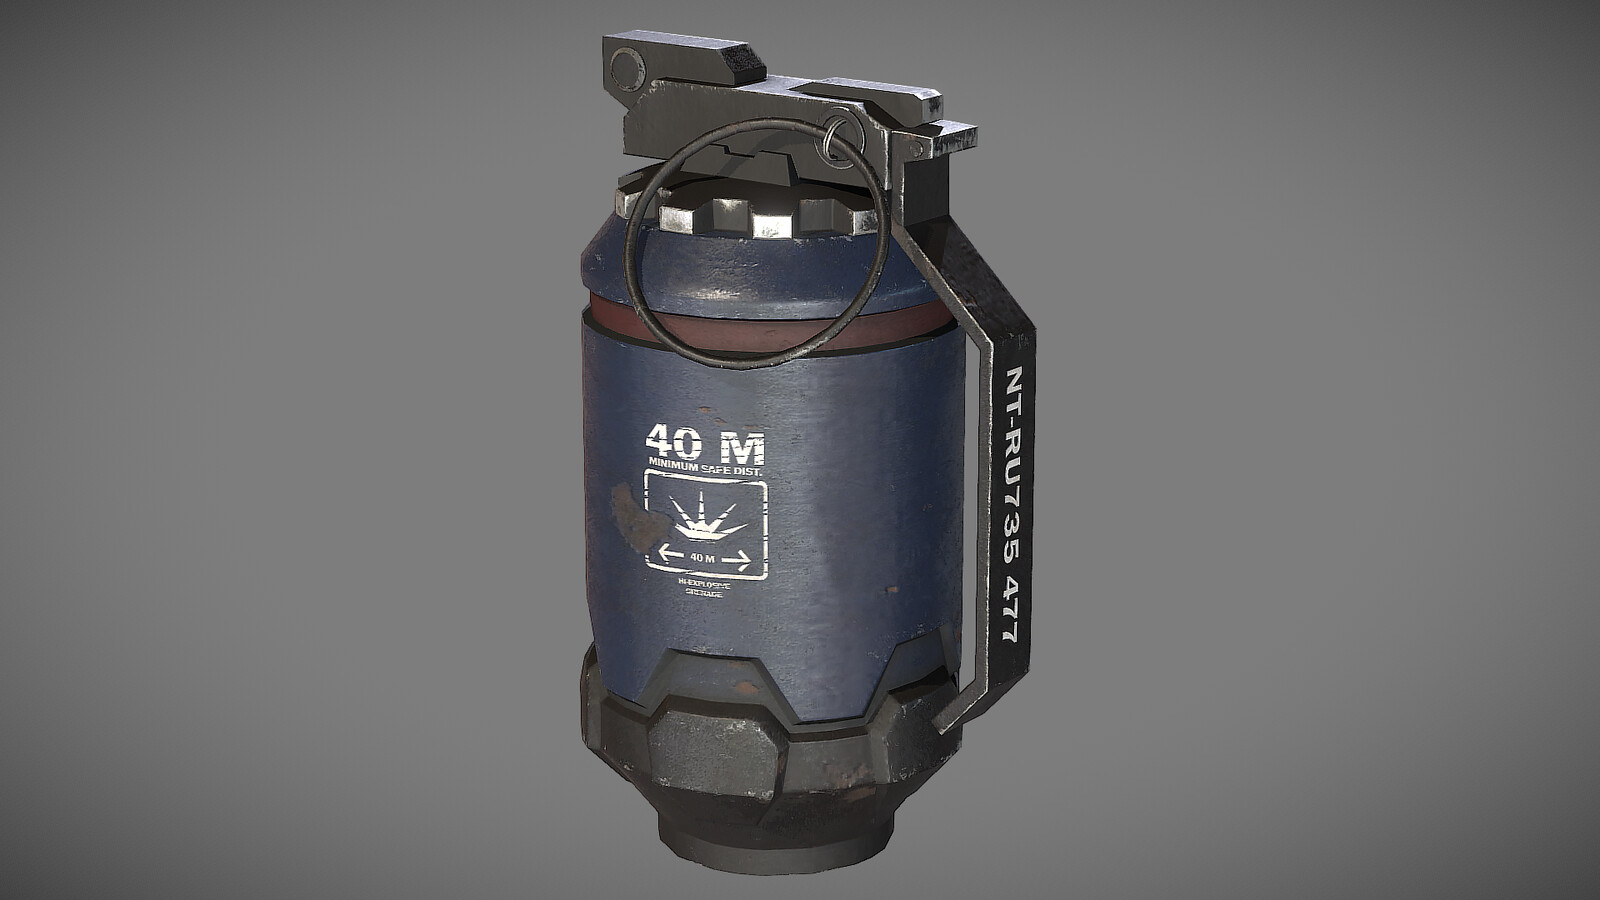 HMX Hi Explosive Grenade